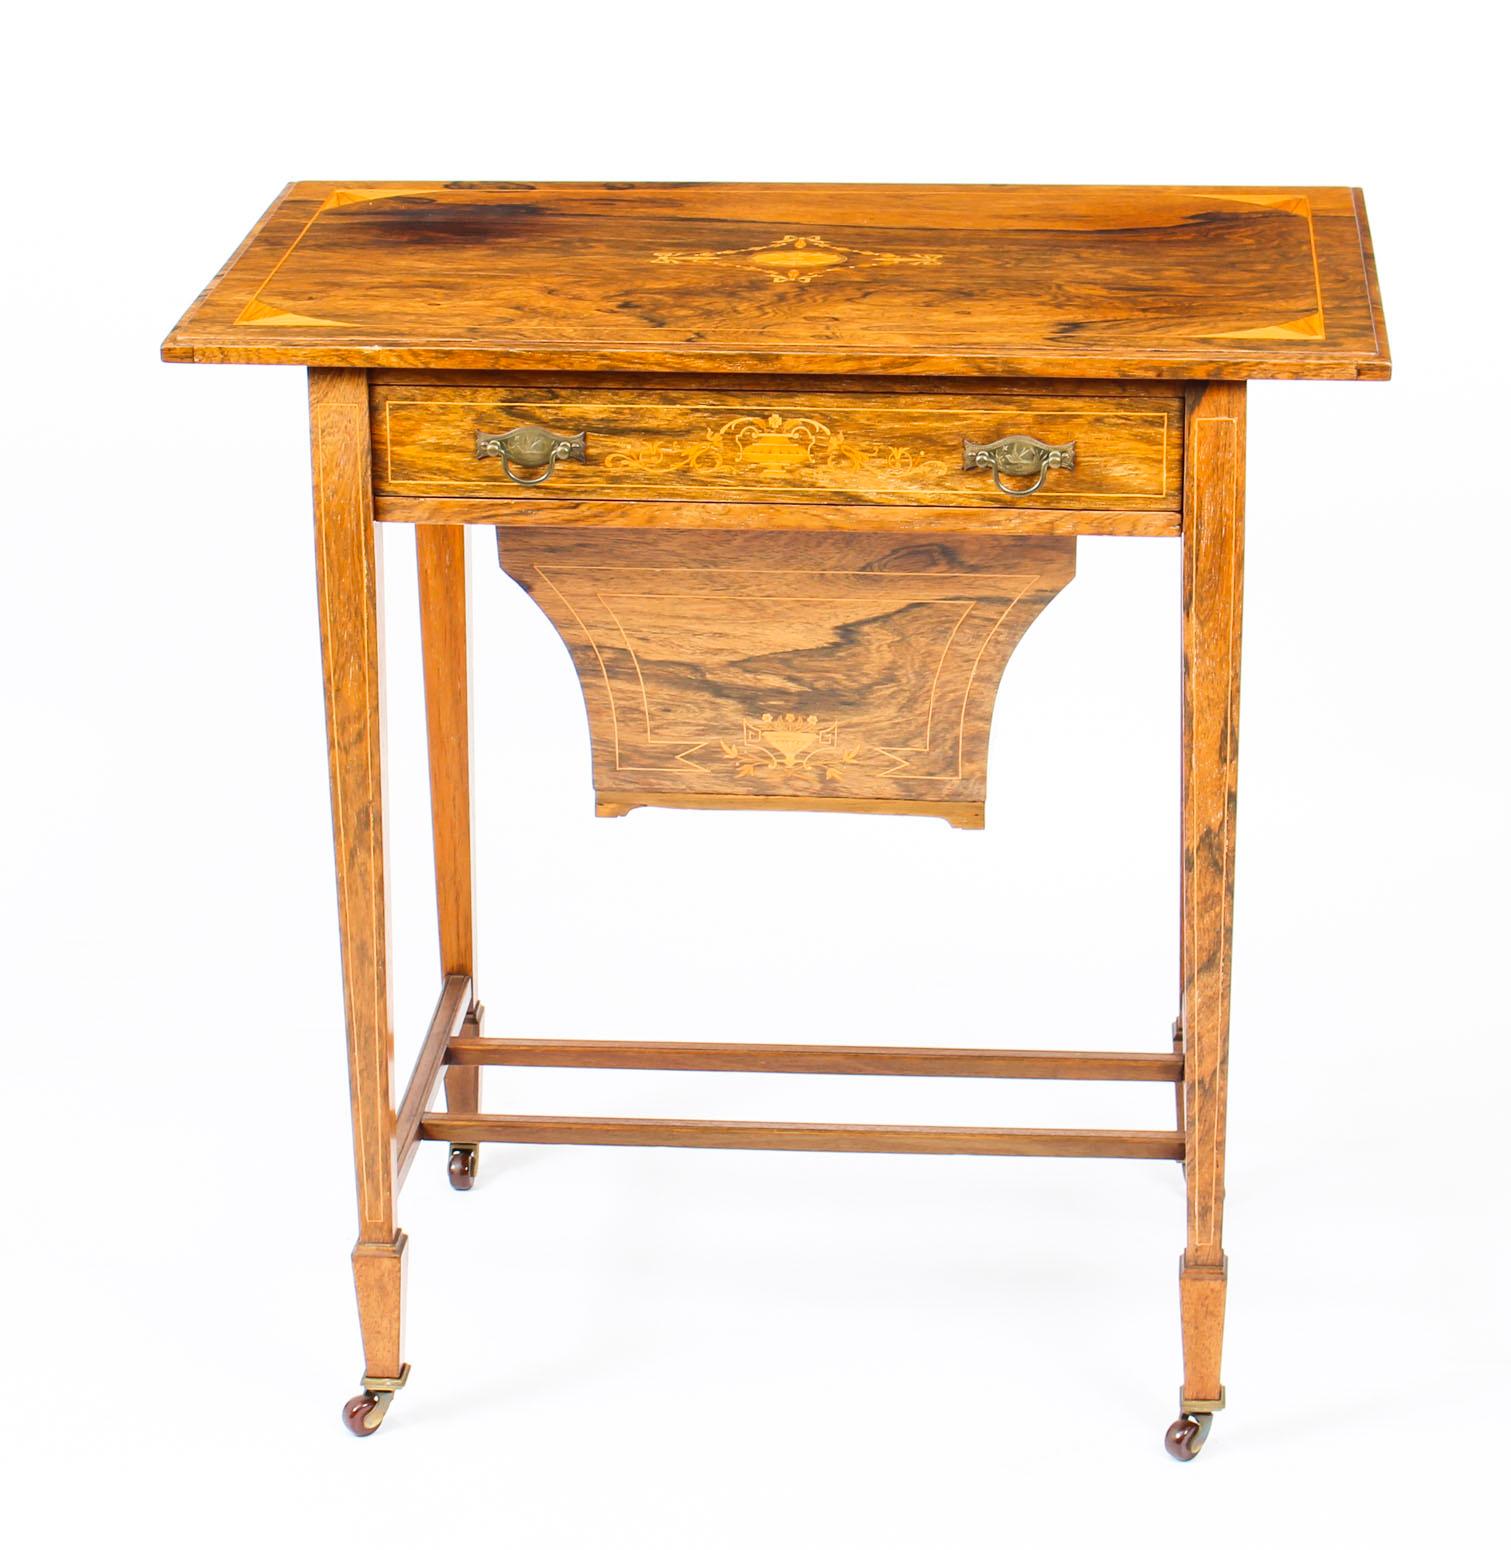 Il s'agit d'une table de travail anglaise antique datant de la fin du 19e siècle.

Il est fabriqué par Gonçalo Alves avec une fabuleuse décoration incrustée de bois de satin. Il comporte un tiroir avec des compartiments pour les cotons, le fil,